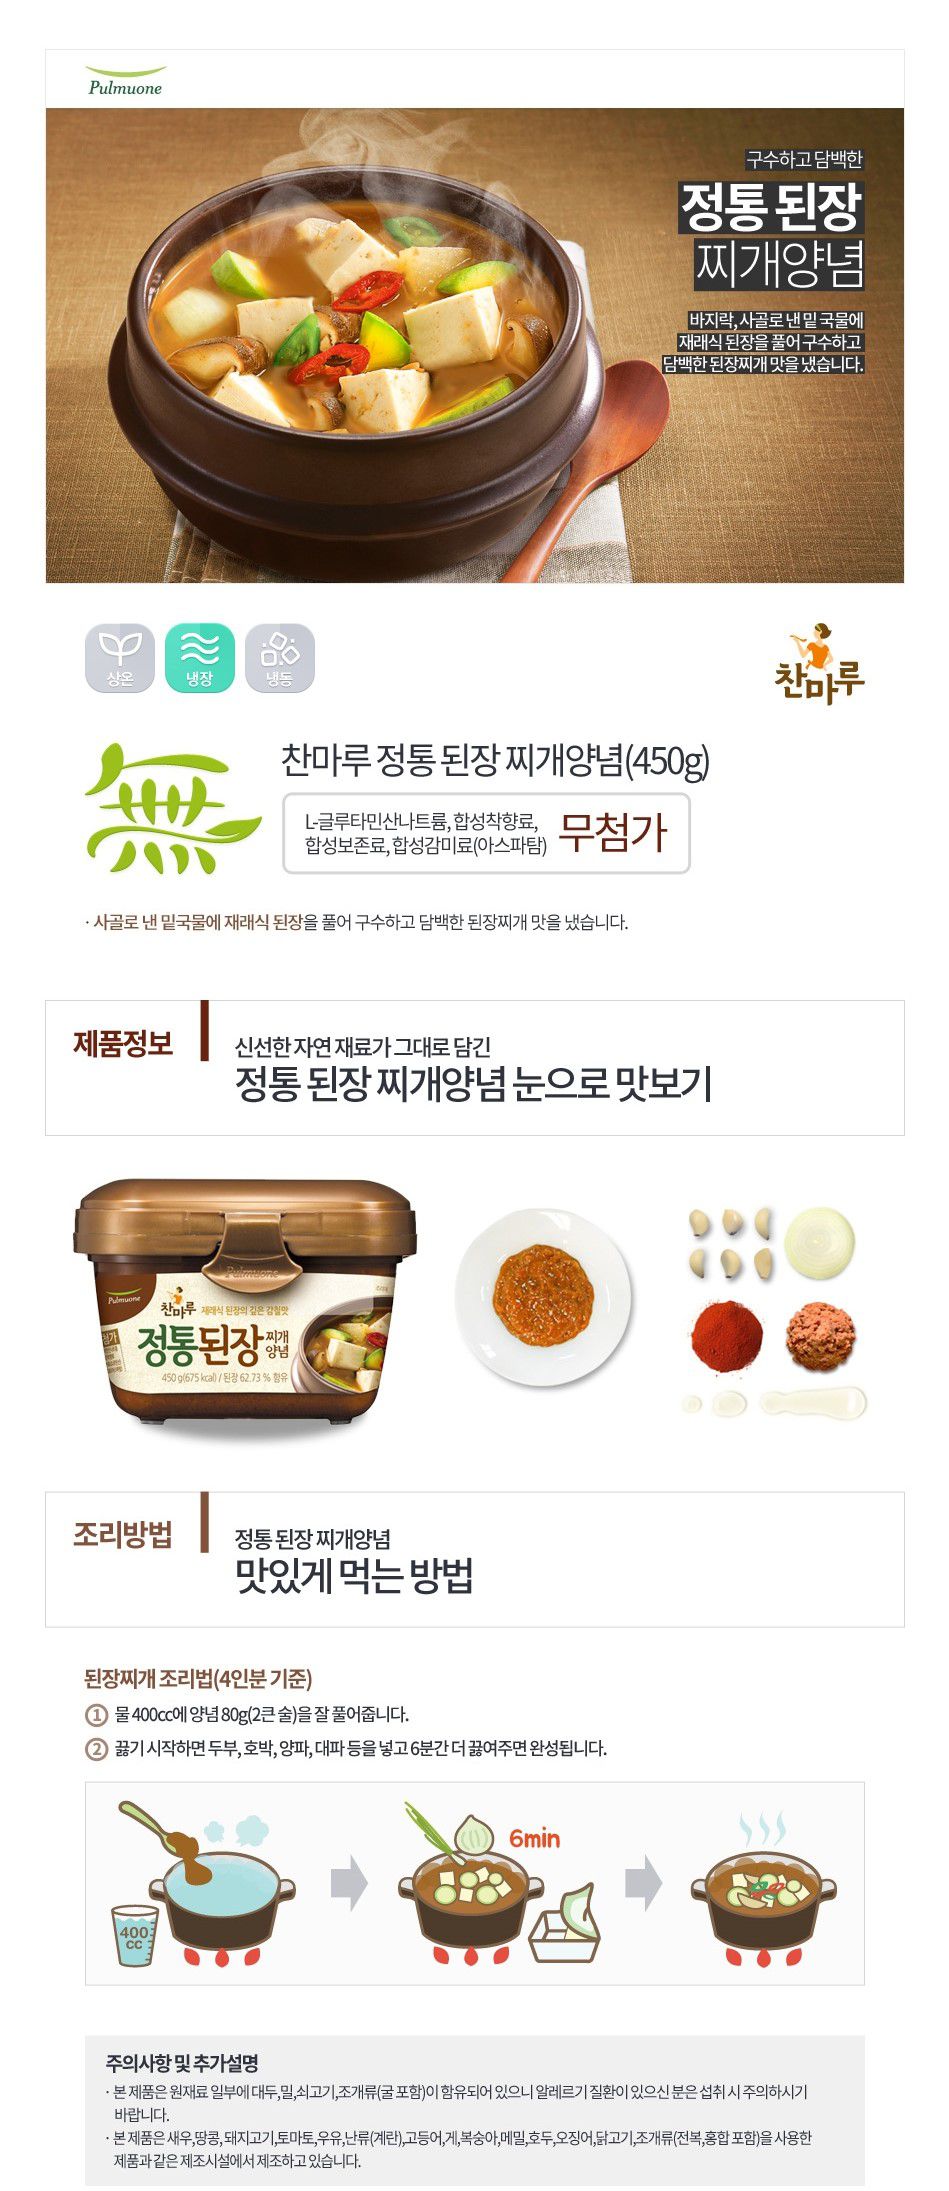 韓國食品-[풀무원] 정통된장찌개양념 450g